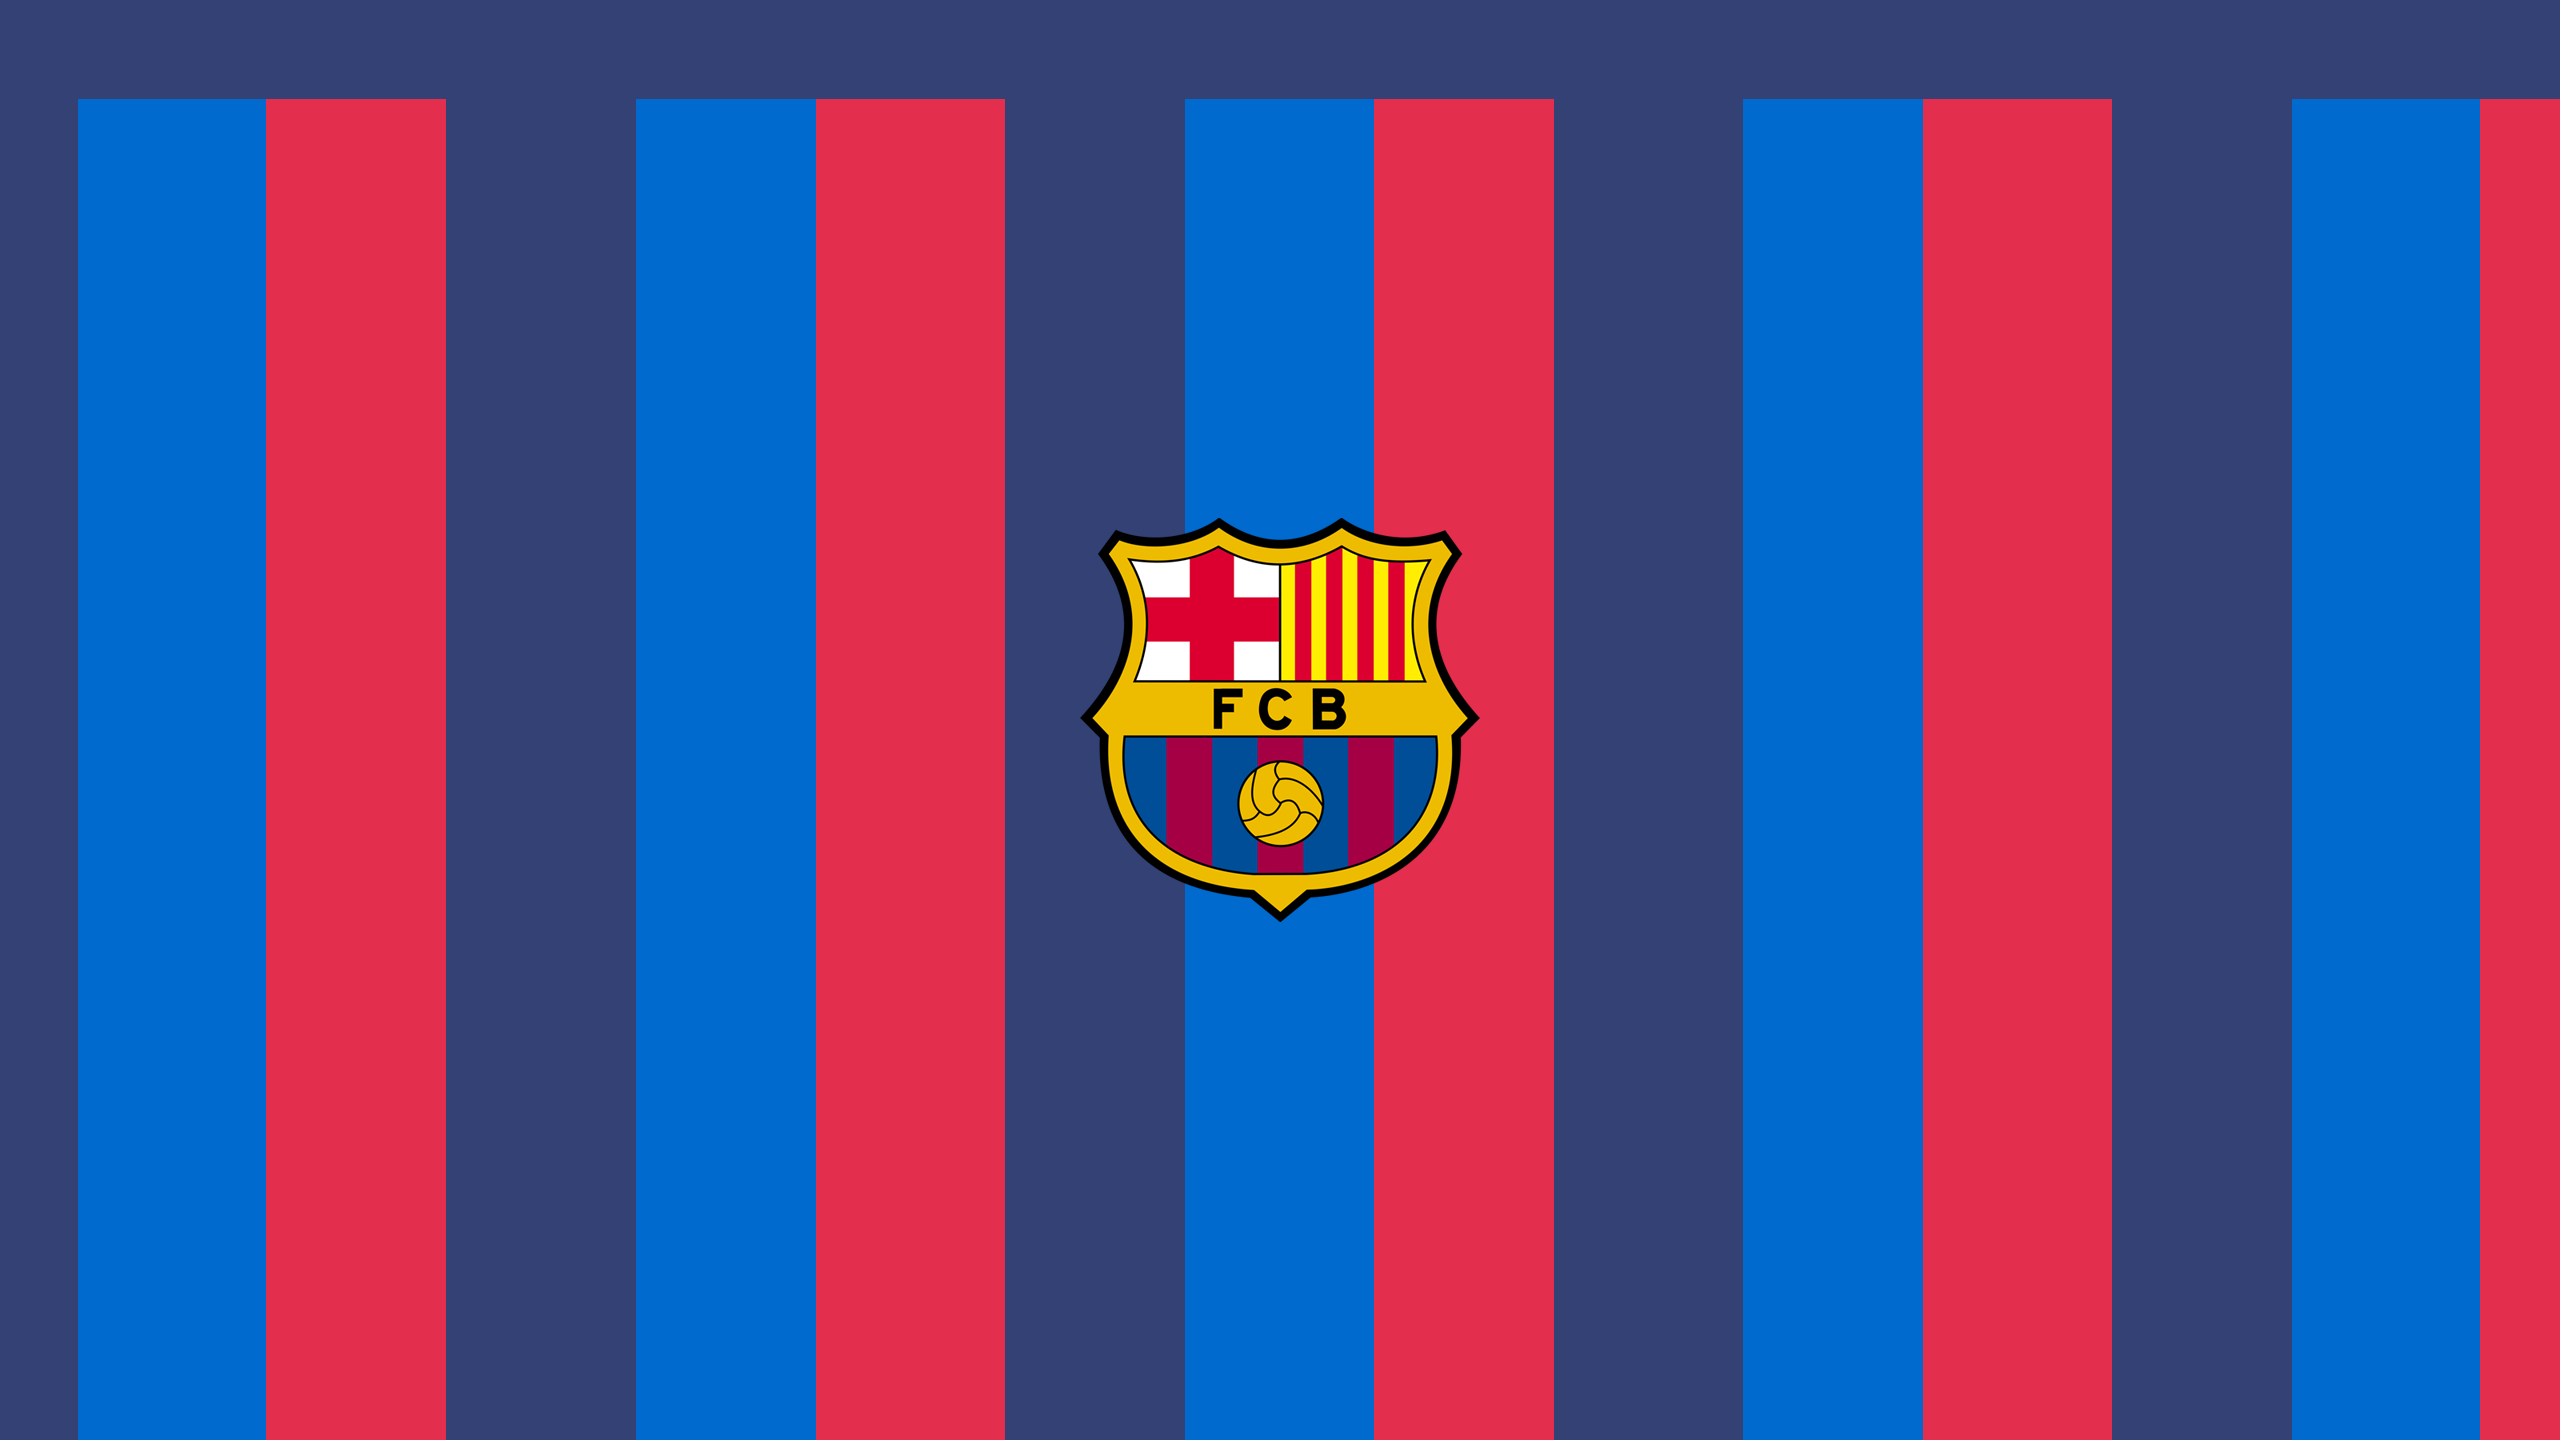 FC Barcelona - La Liga - Square Bettor